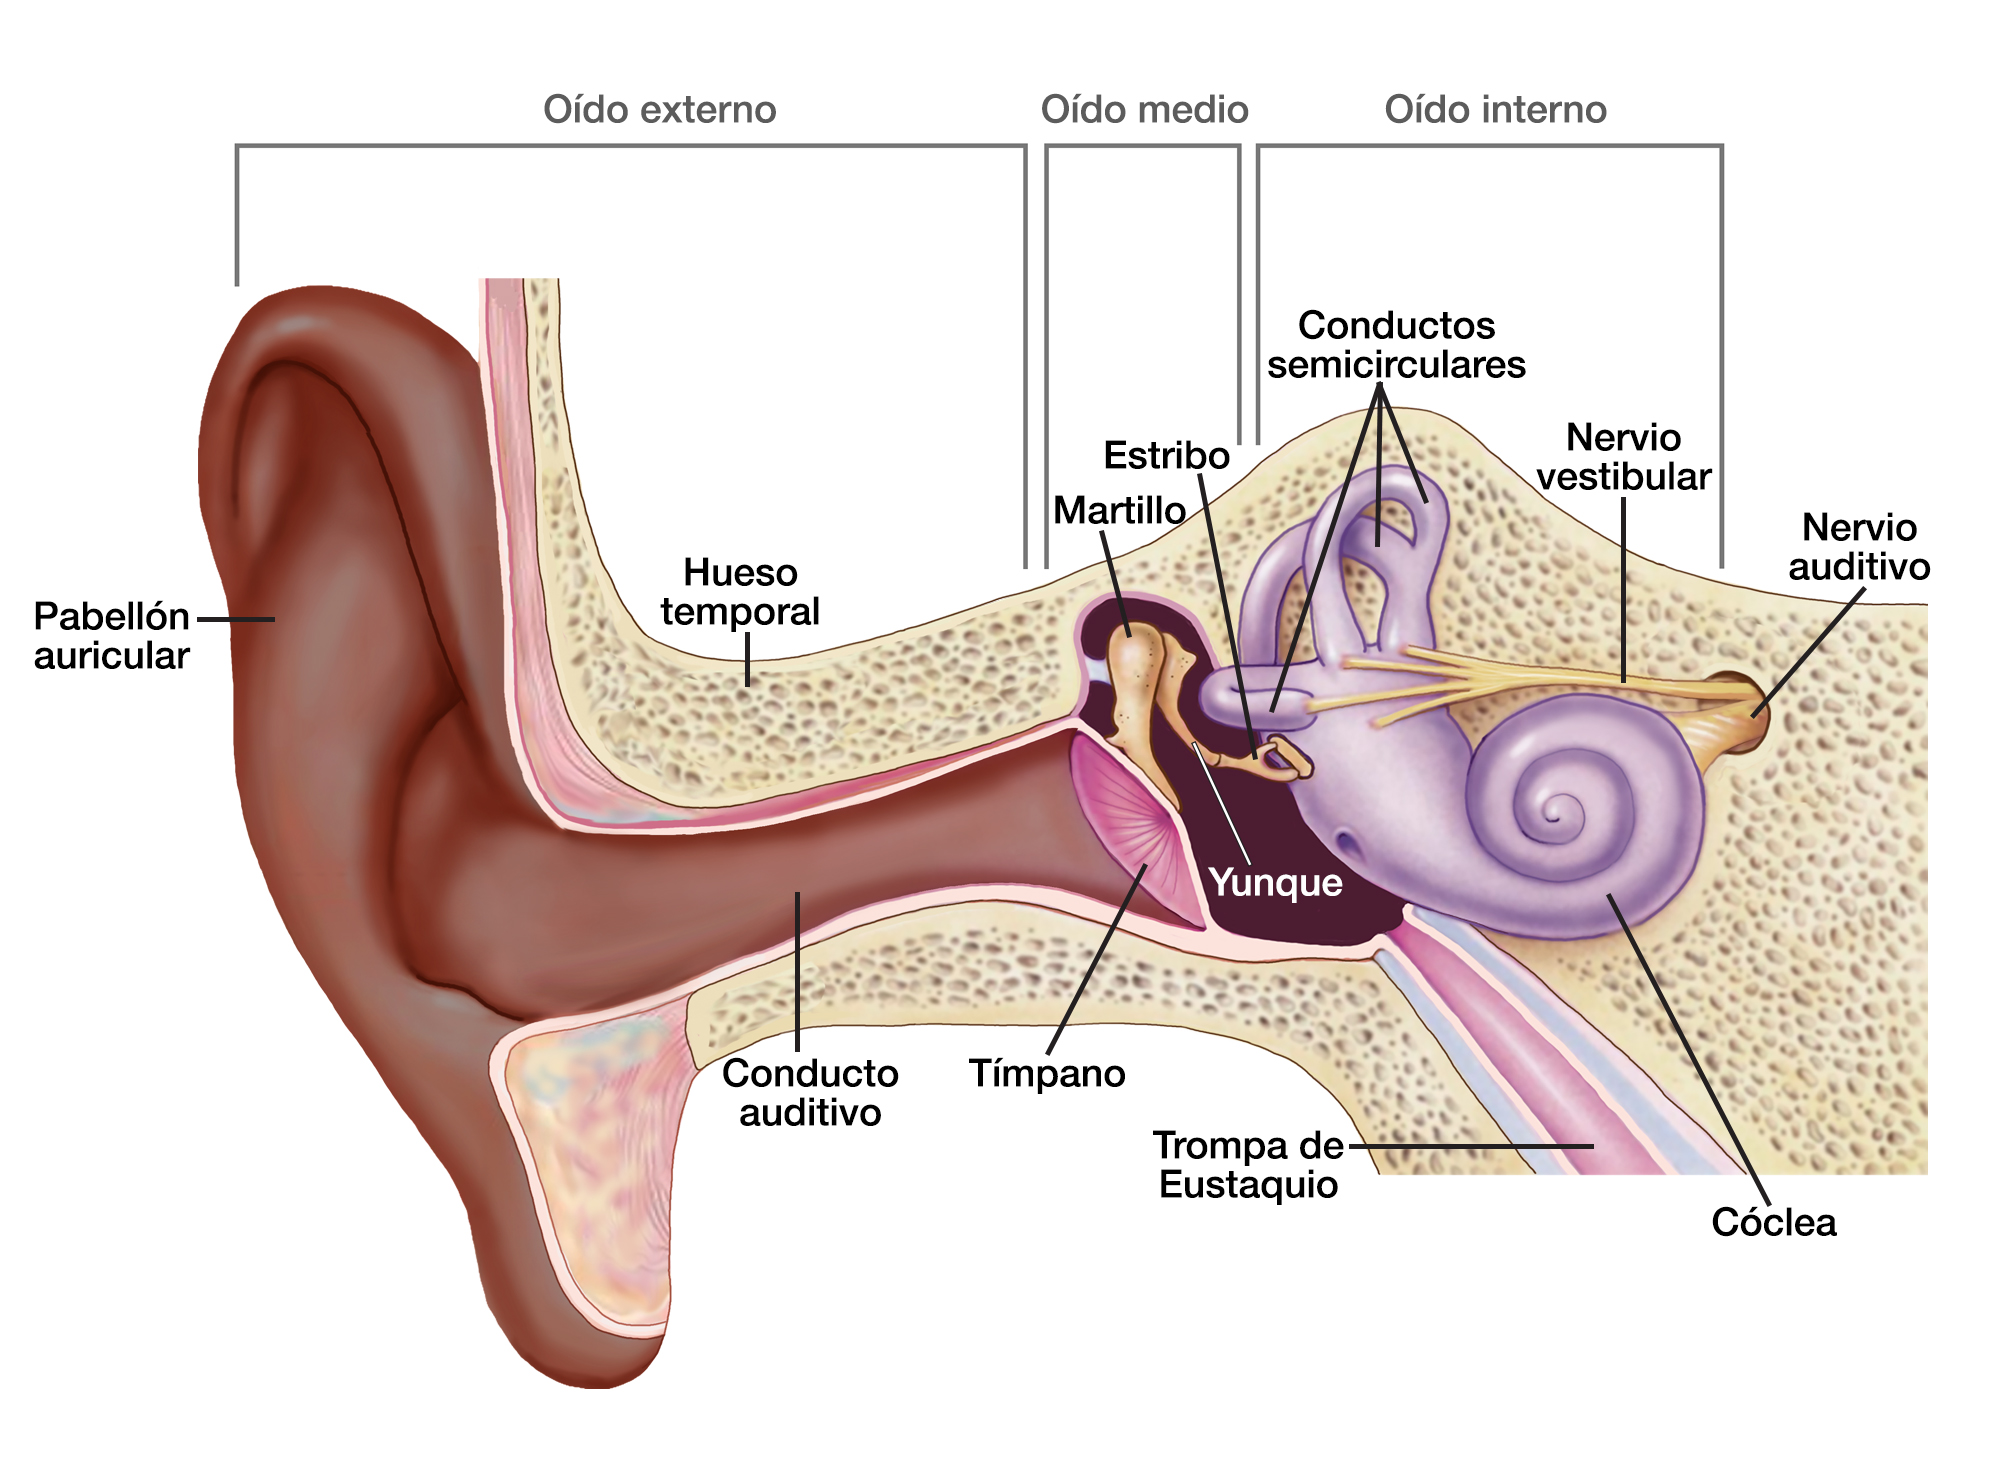 El oído externo incluye el pabellón auricular, el hueso temporal y el conducto auditivo. El oído medio incluye el tímpano, el martillo, el yunque y el estribo. El oído interno incluye los conductos semicirculares, la trompa de Eustaquio, la cóclea, el nervio vestibular y el nervio auditivo.